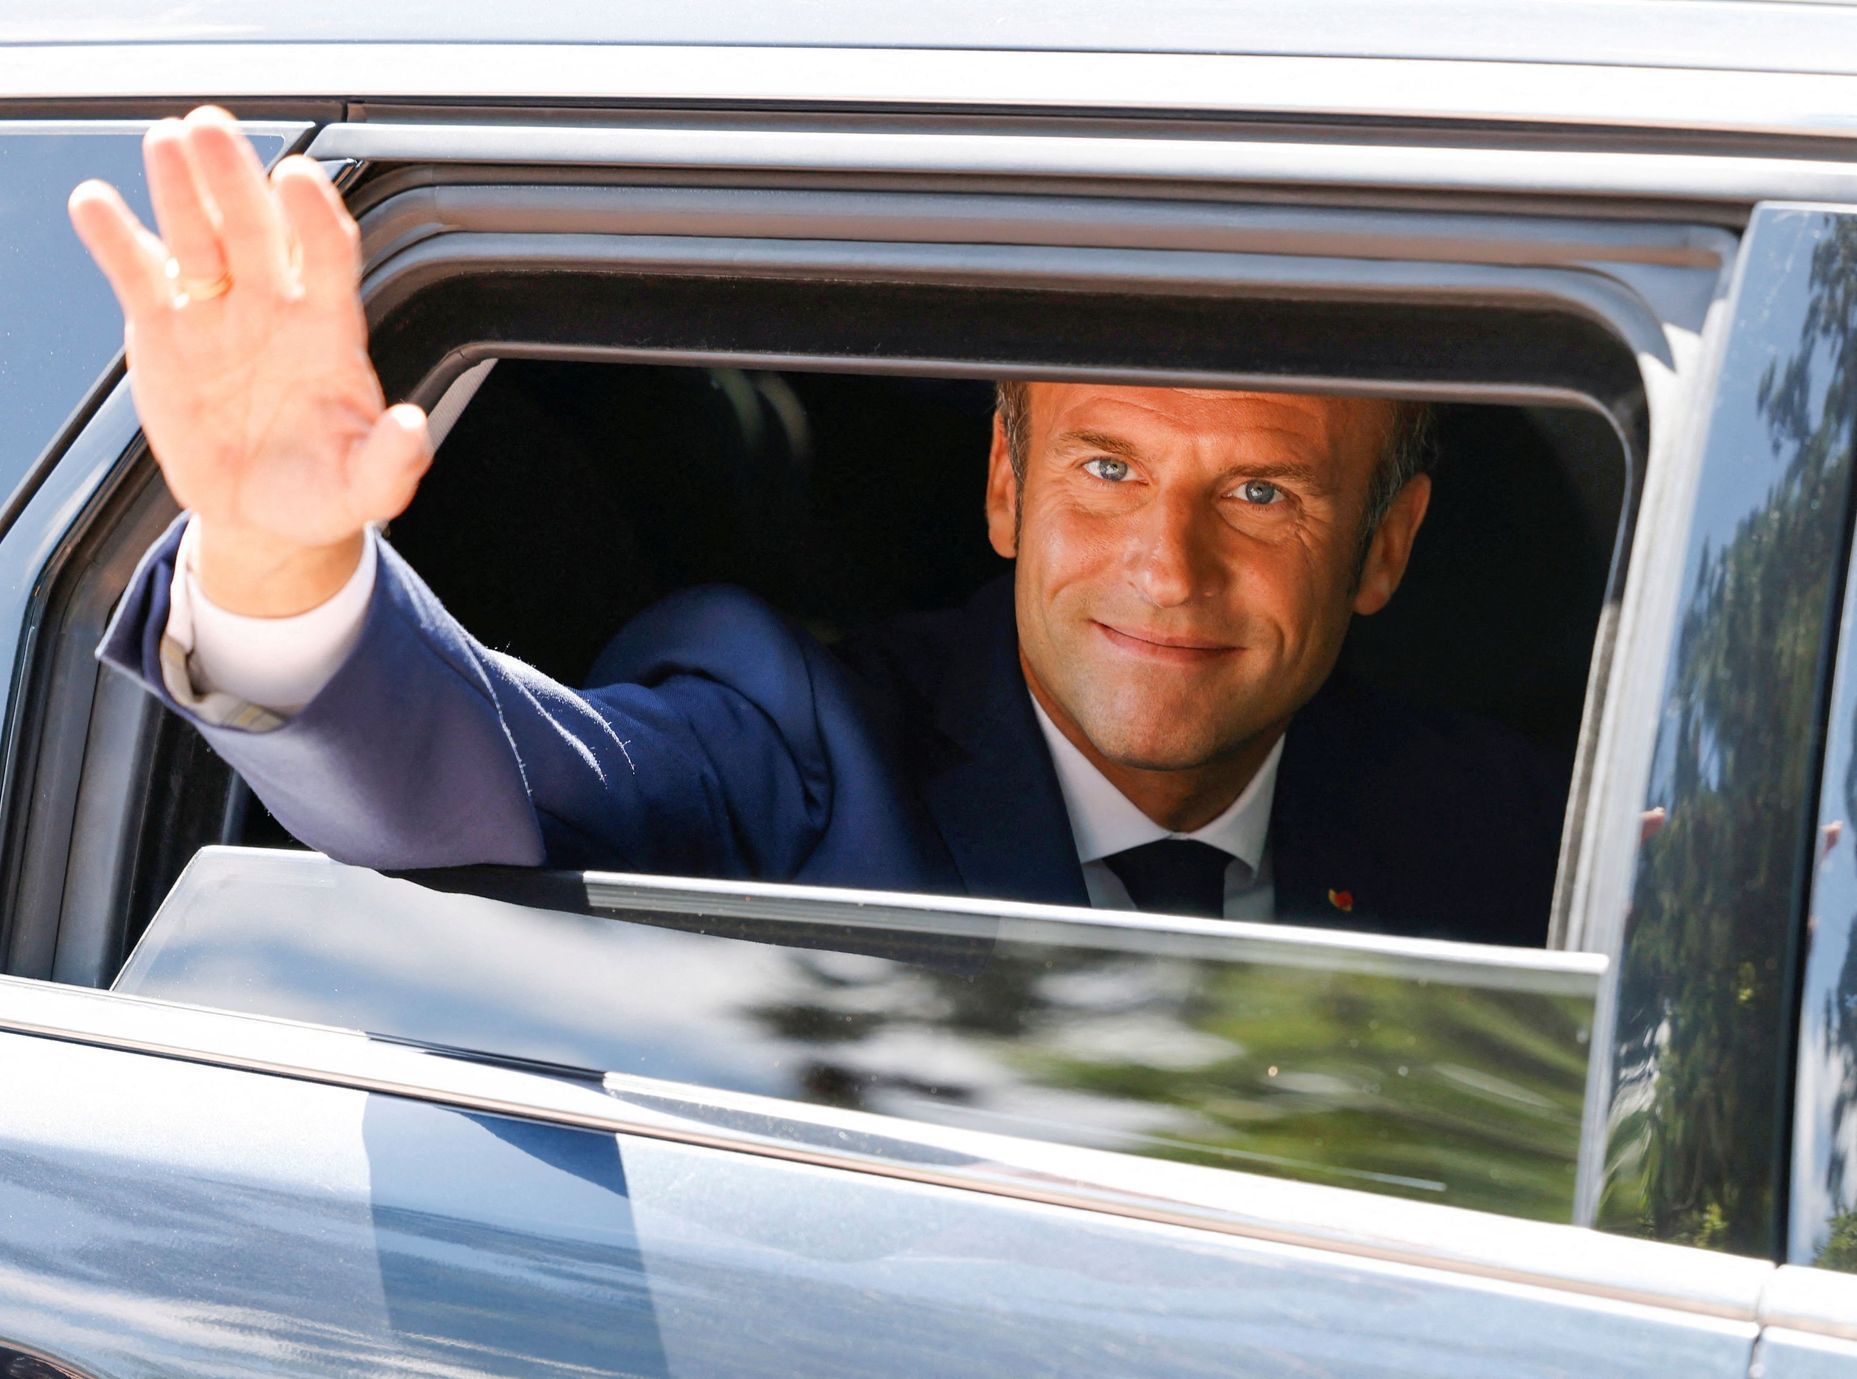 Le président français a perdu sa majorité.  Rejet écrasant de Macron, la presse évalue l’élection